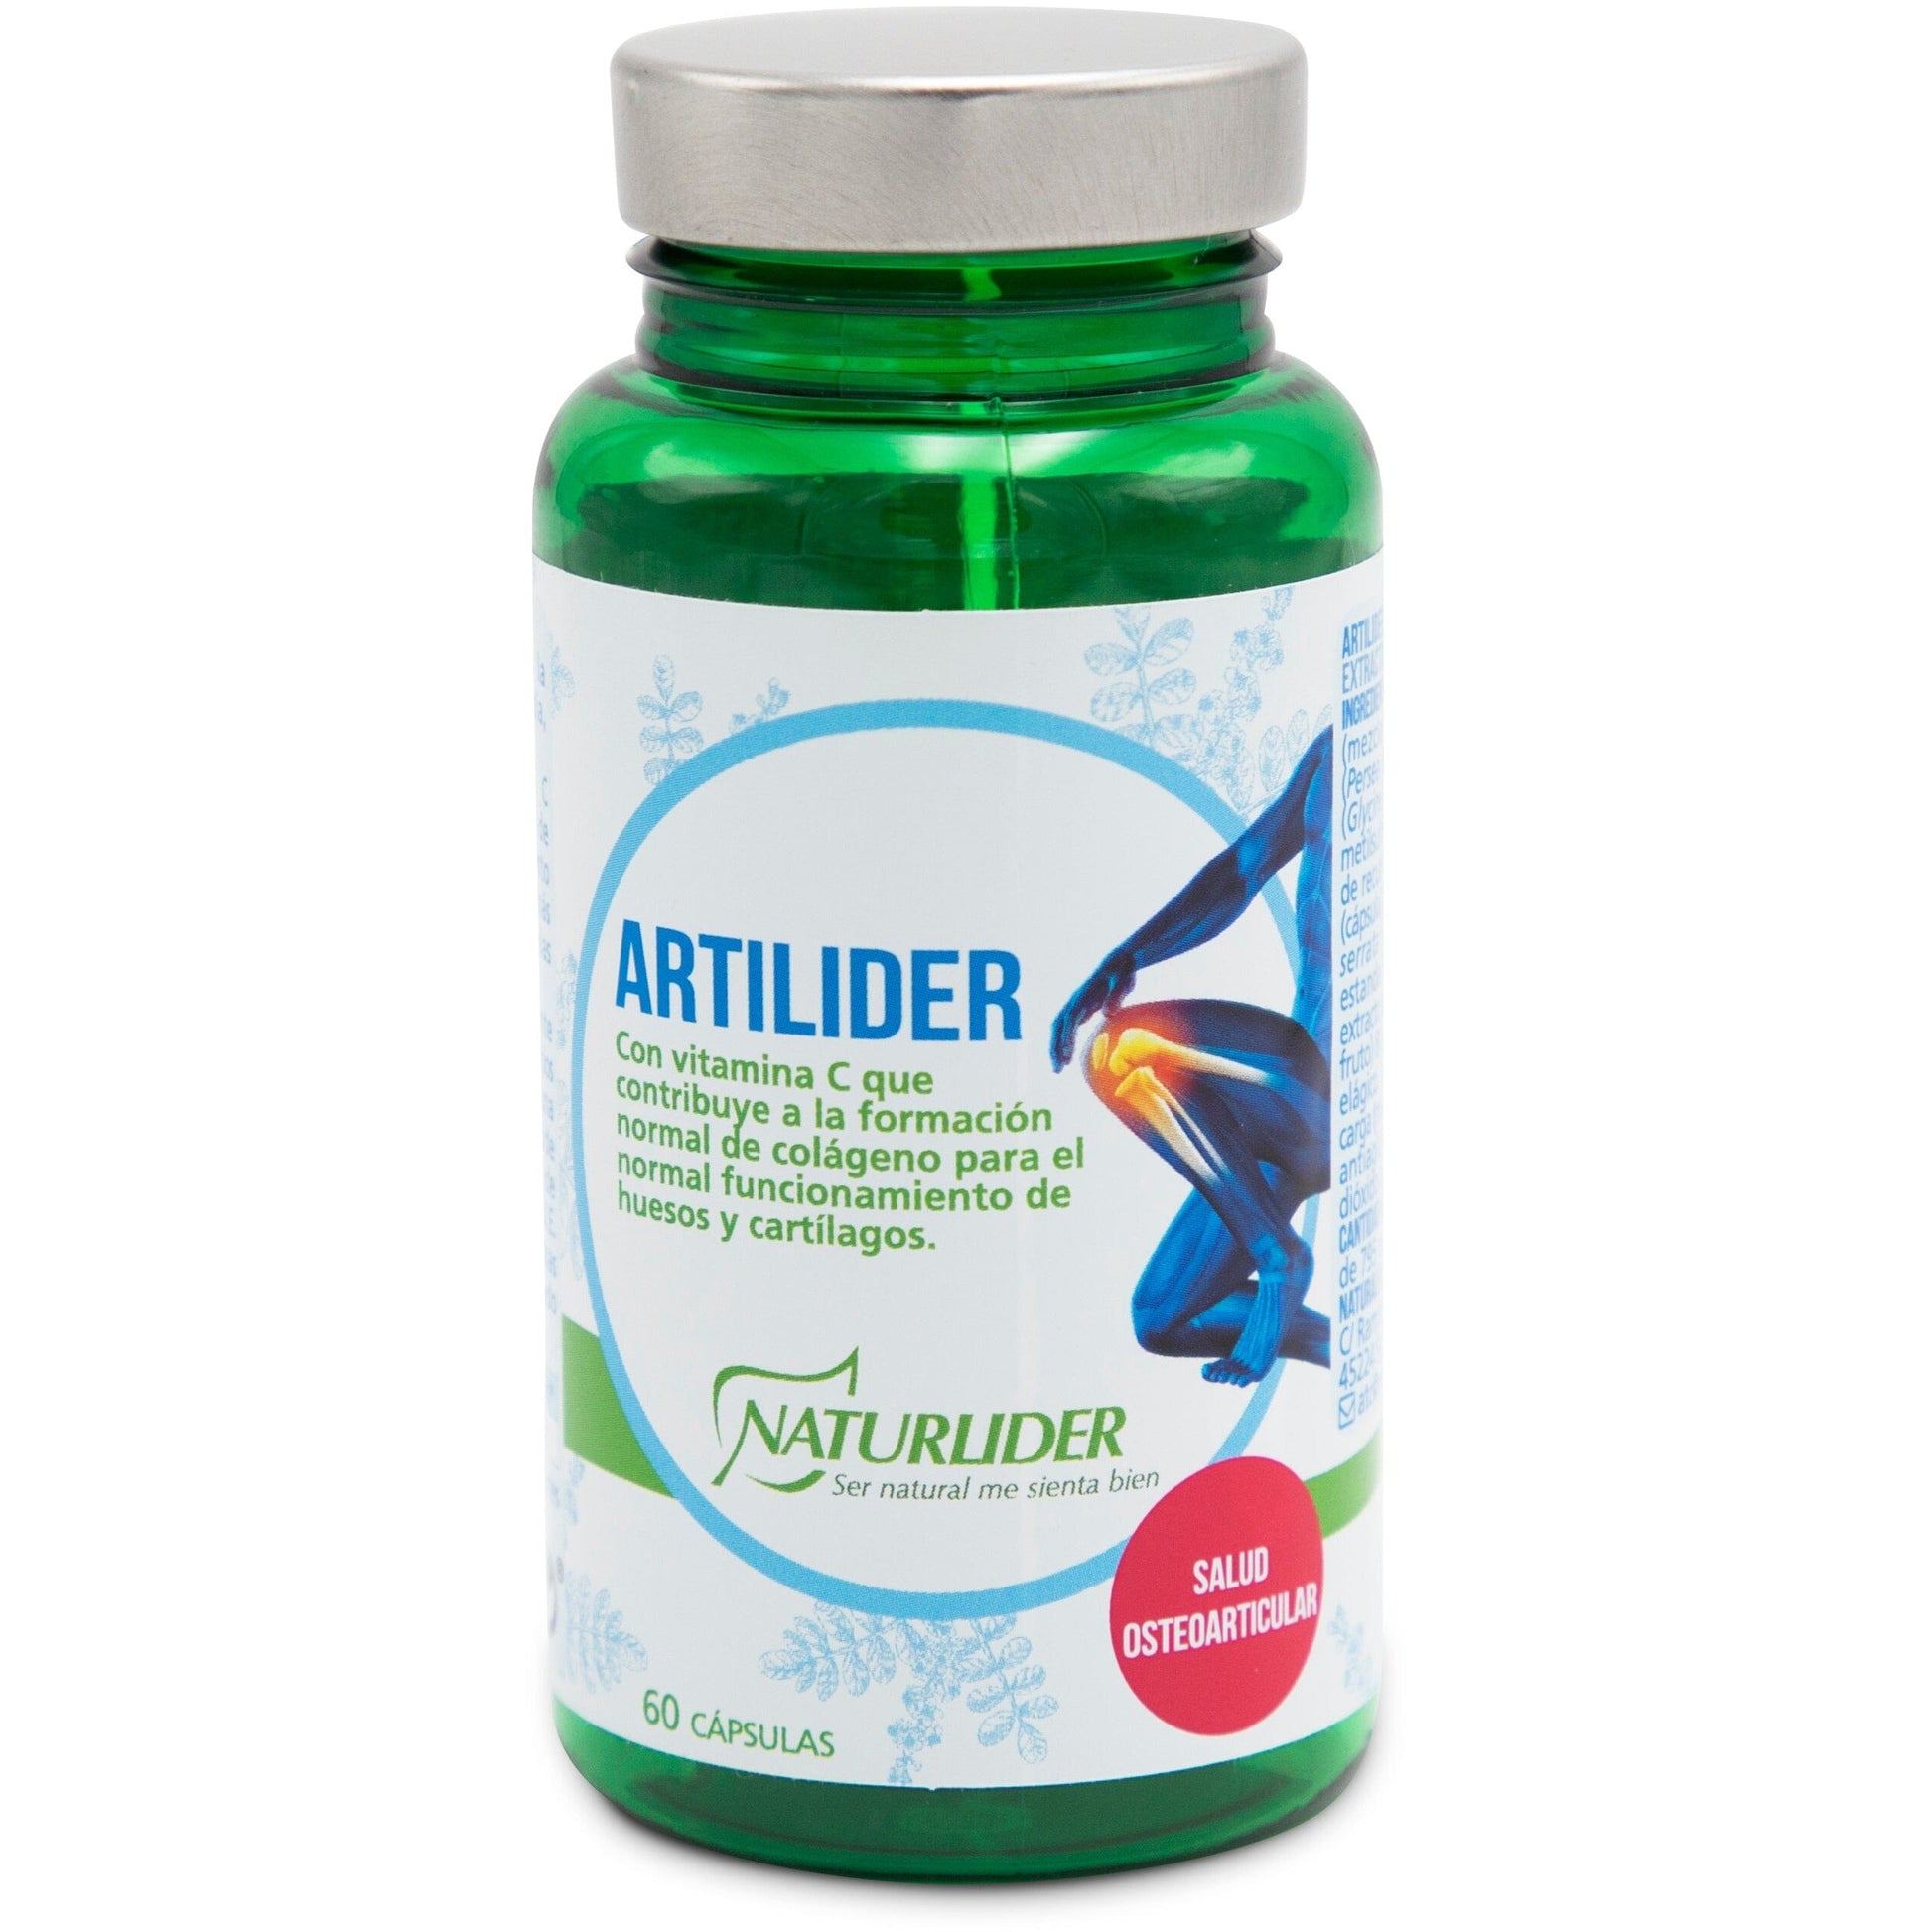 Artilider 60 cápsulas | Naturlider - Dietetica Ferrer